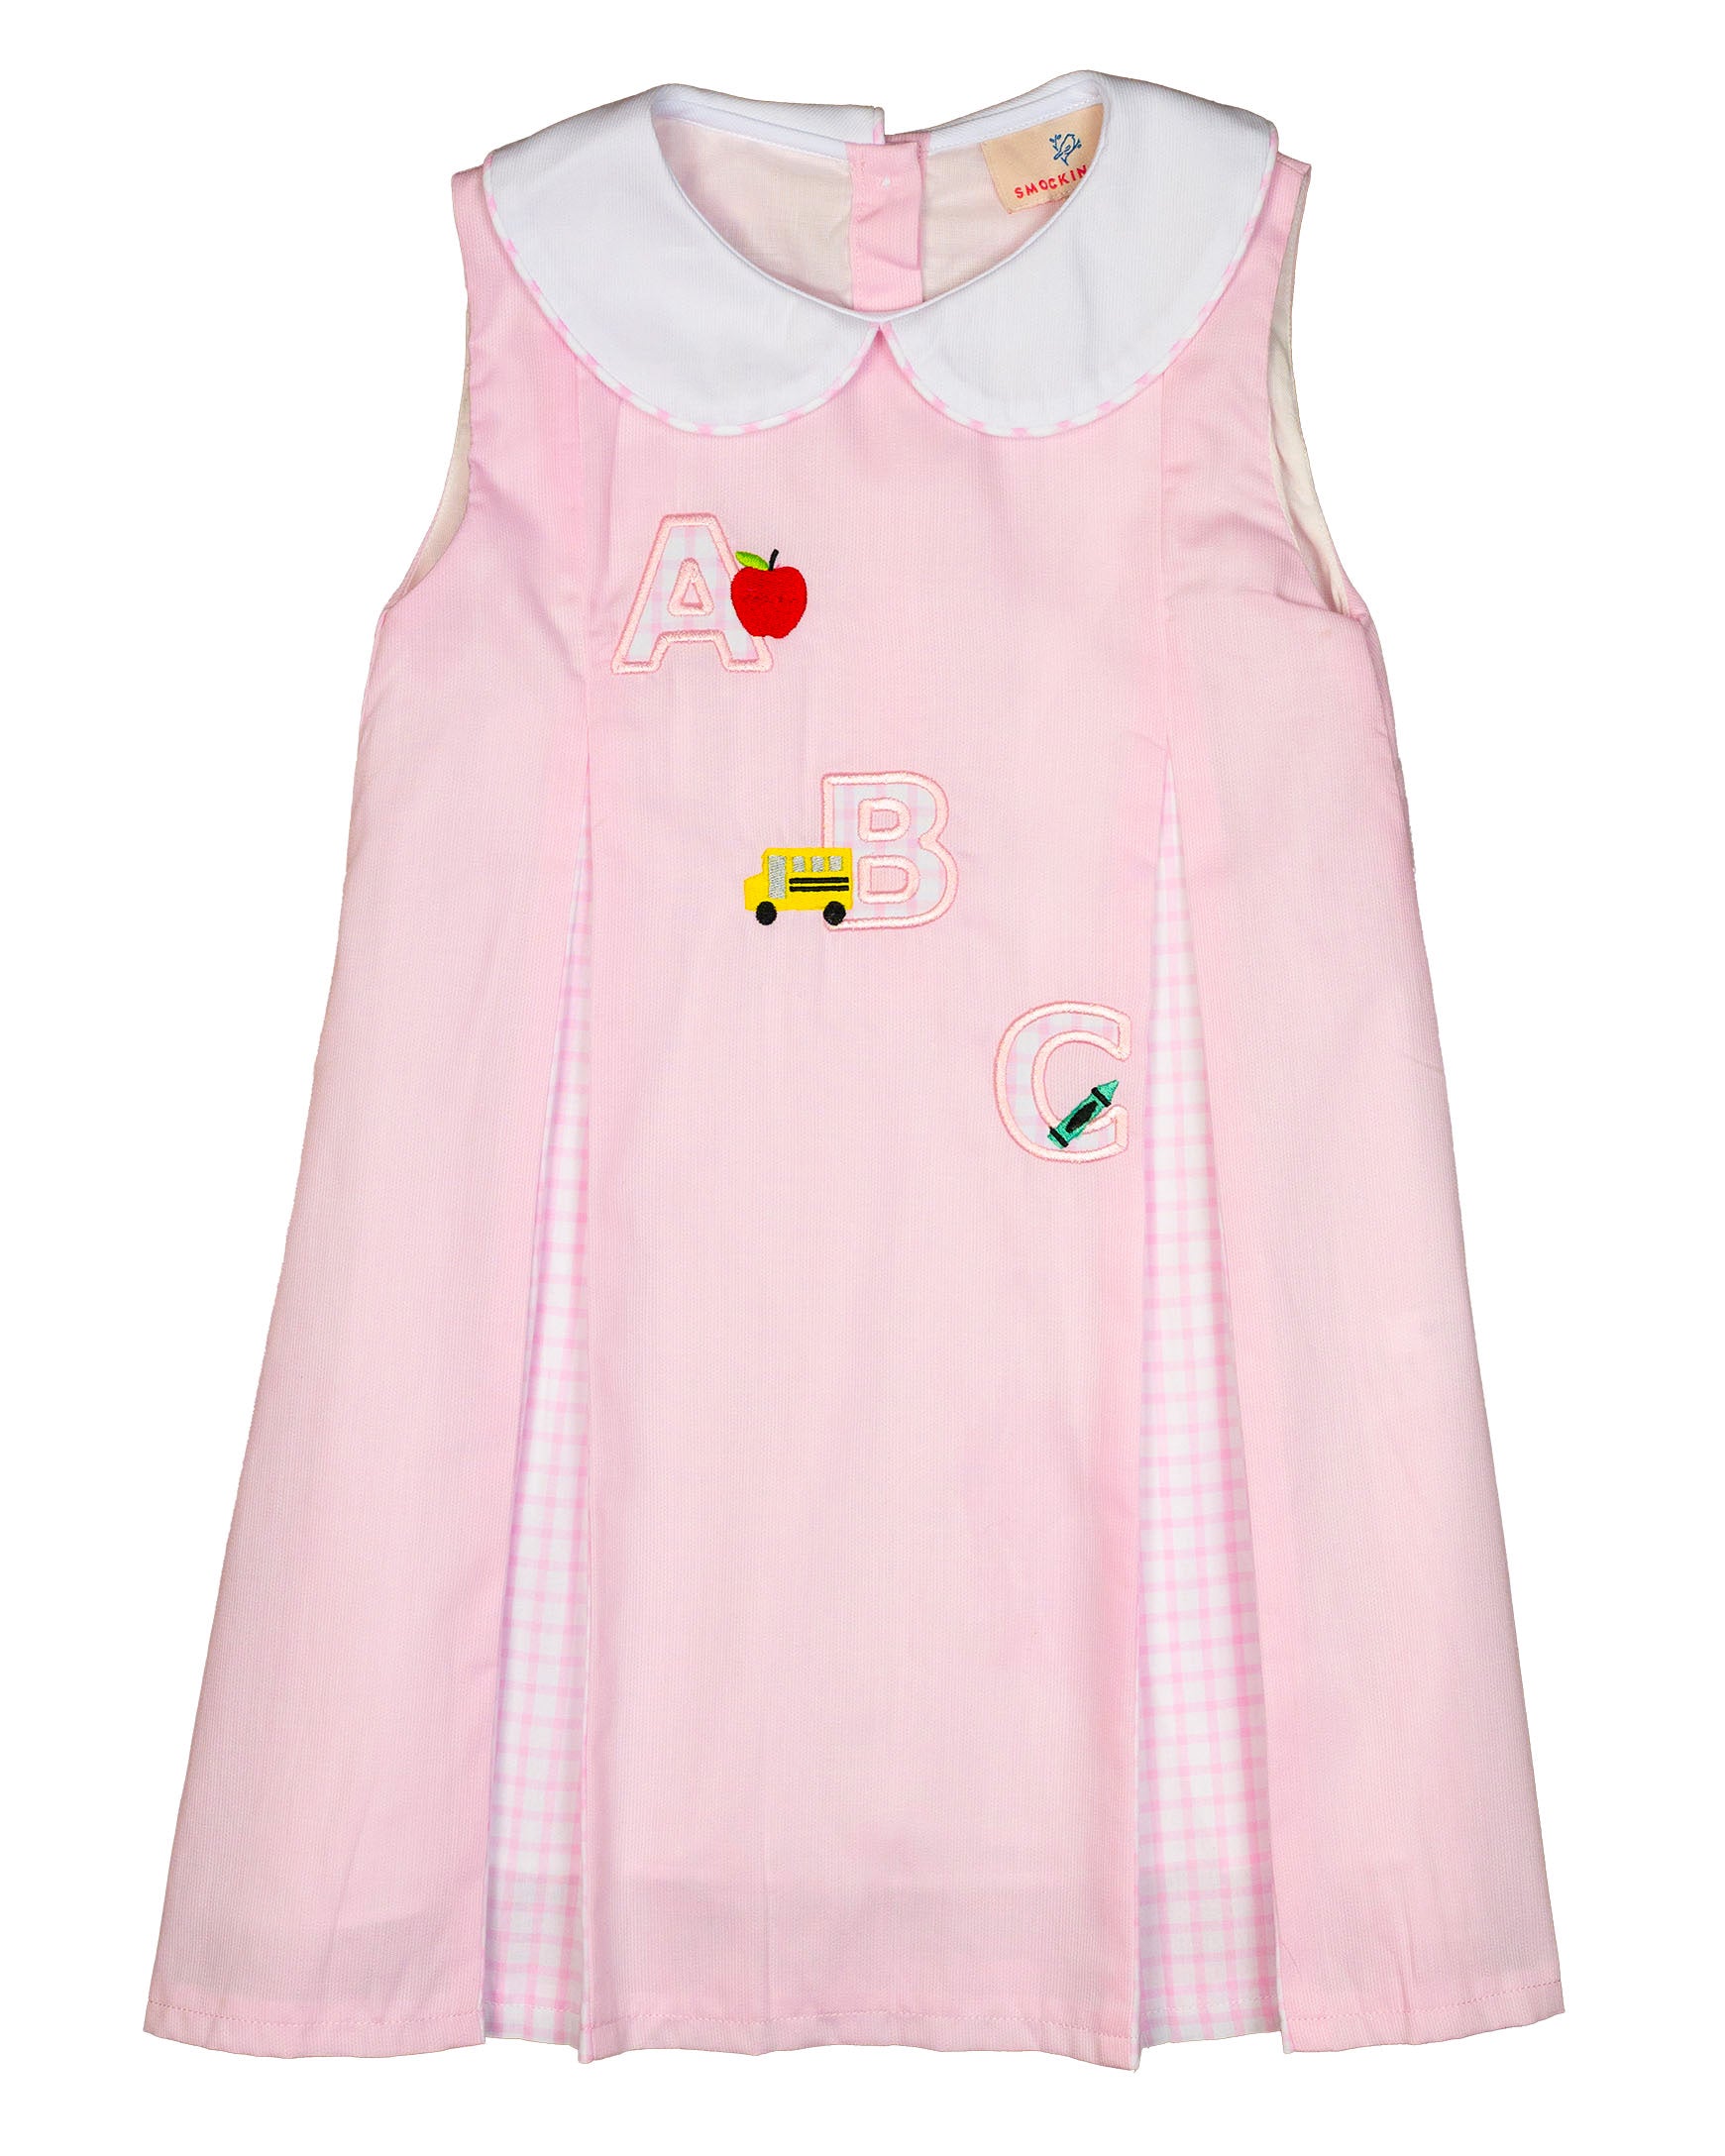 Alphabet Applique Pink Pleated Dress- FINAL SALE